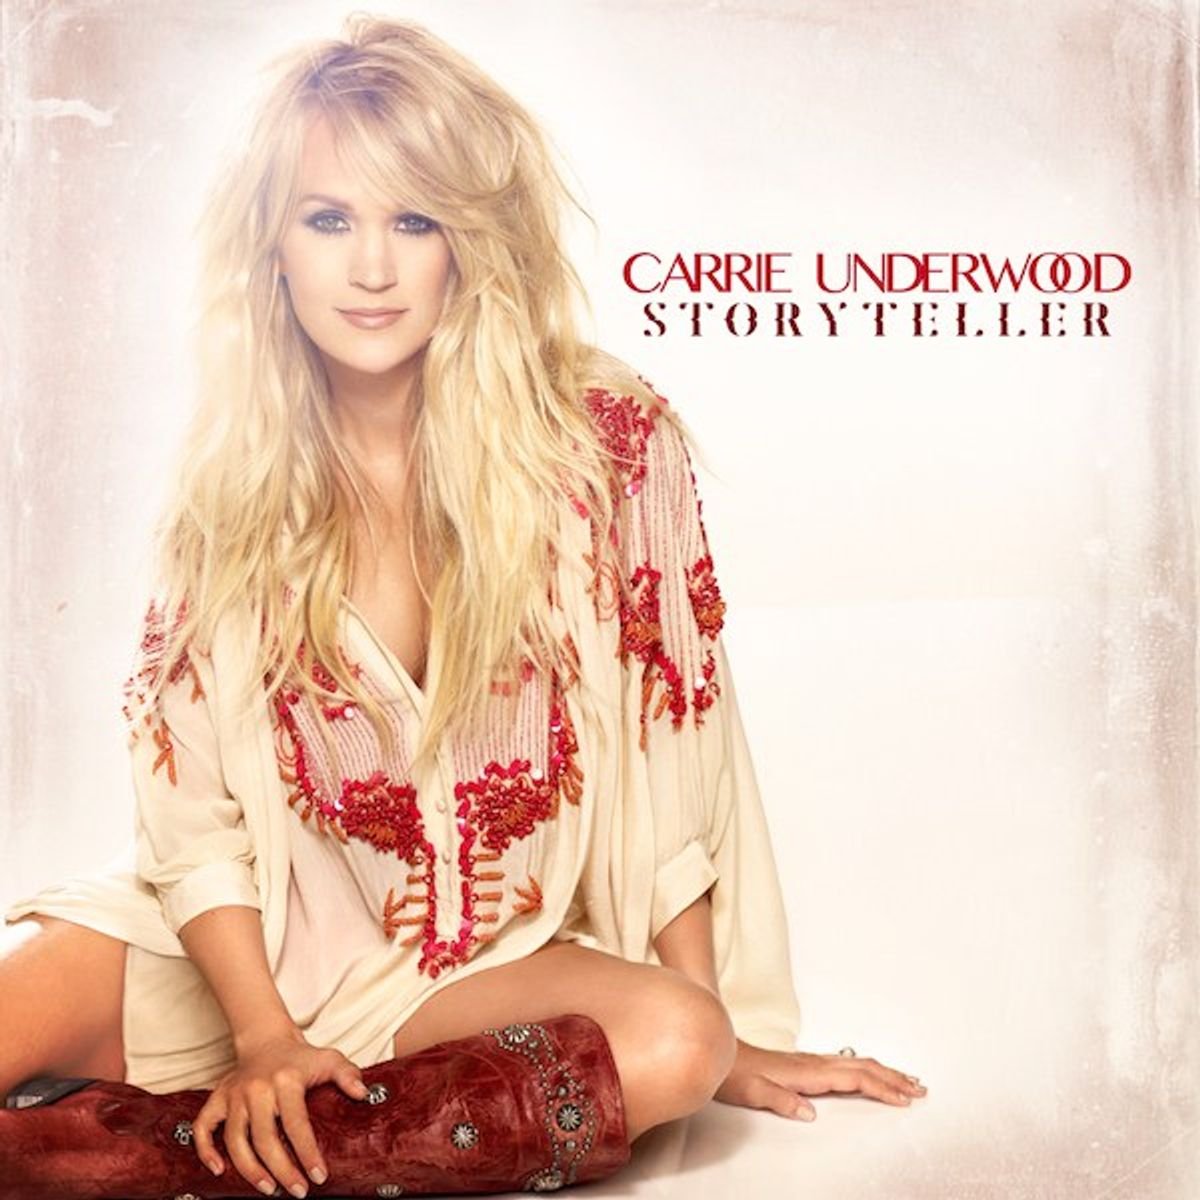 Carrie Underwood's 5 Best Storytelling Songs